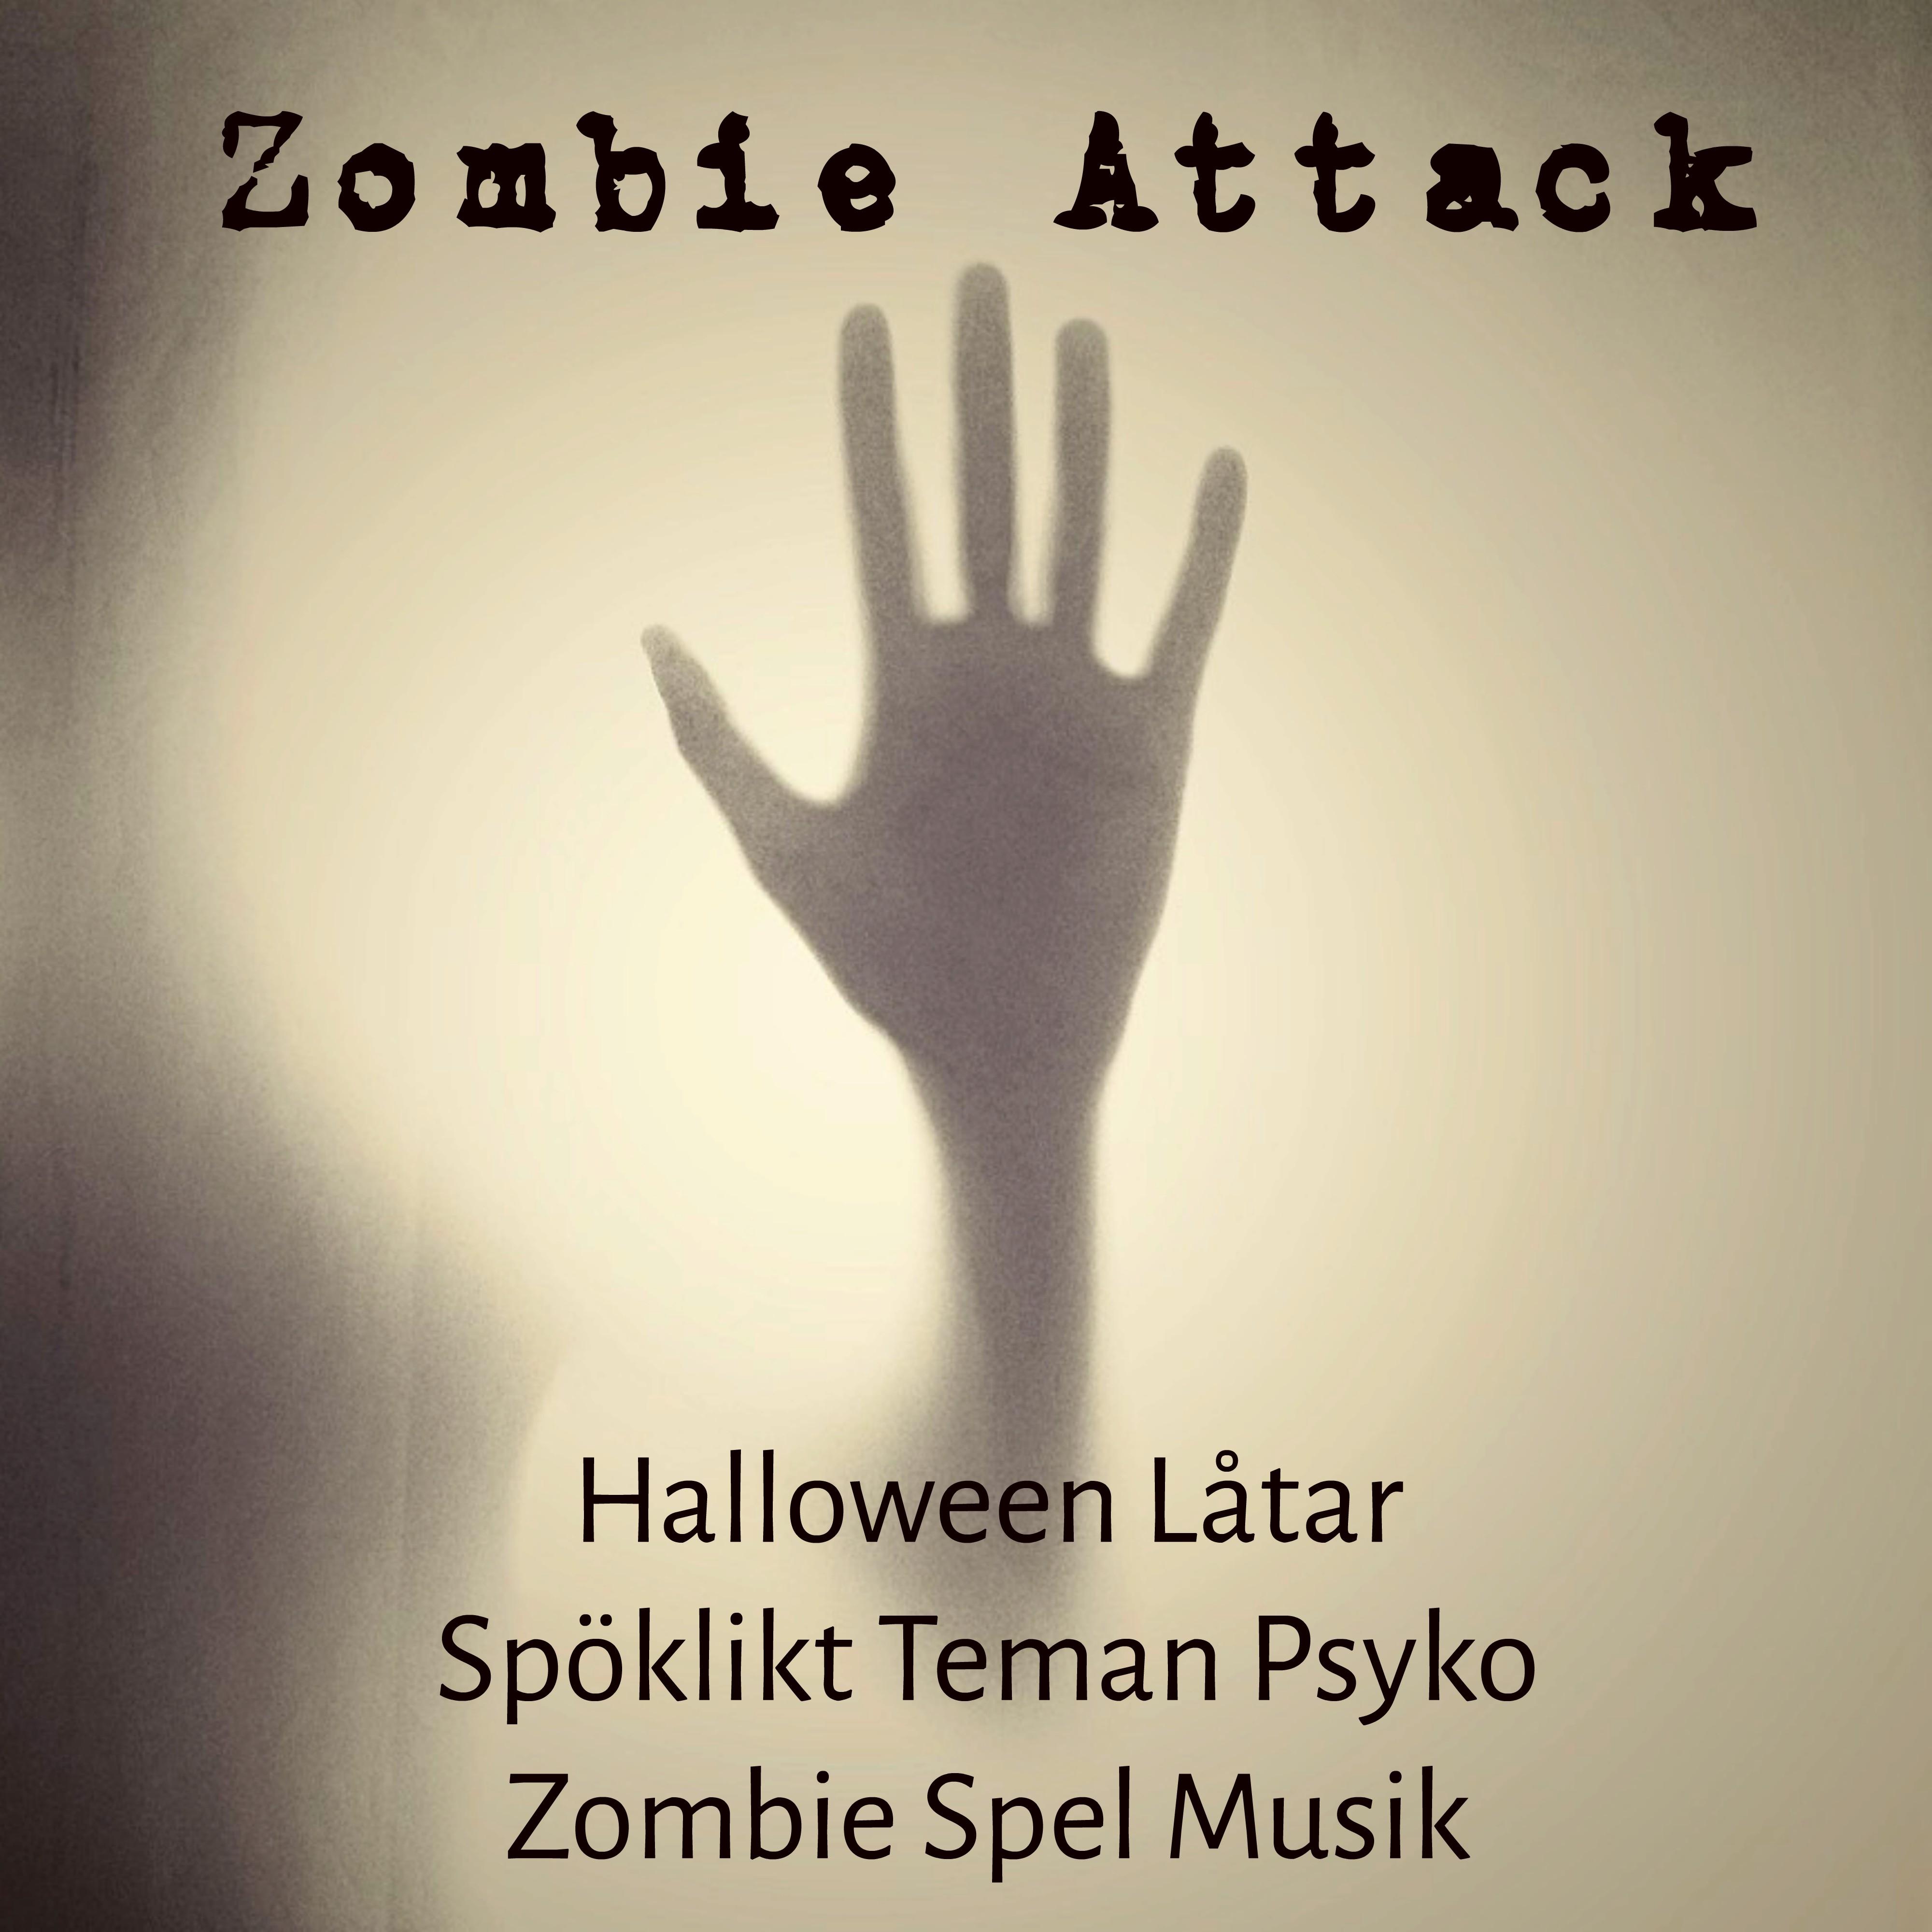 Zombie Attack  Halloween L tar Sp klikt Teman Psyko Zombie Spel Musik med Electro Dubstep Natur Ljud